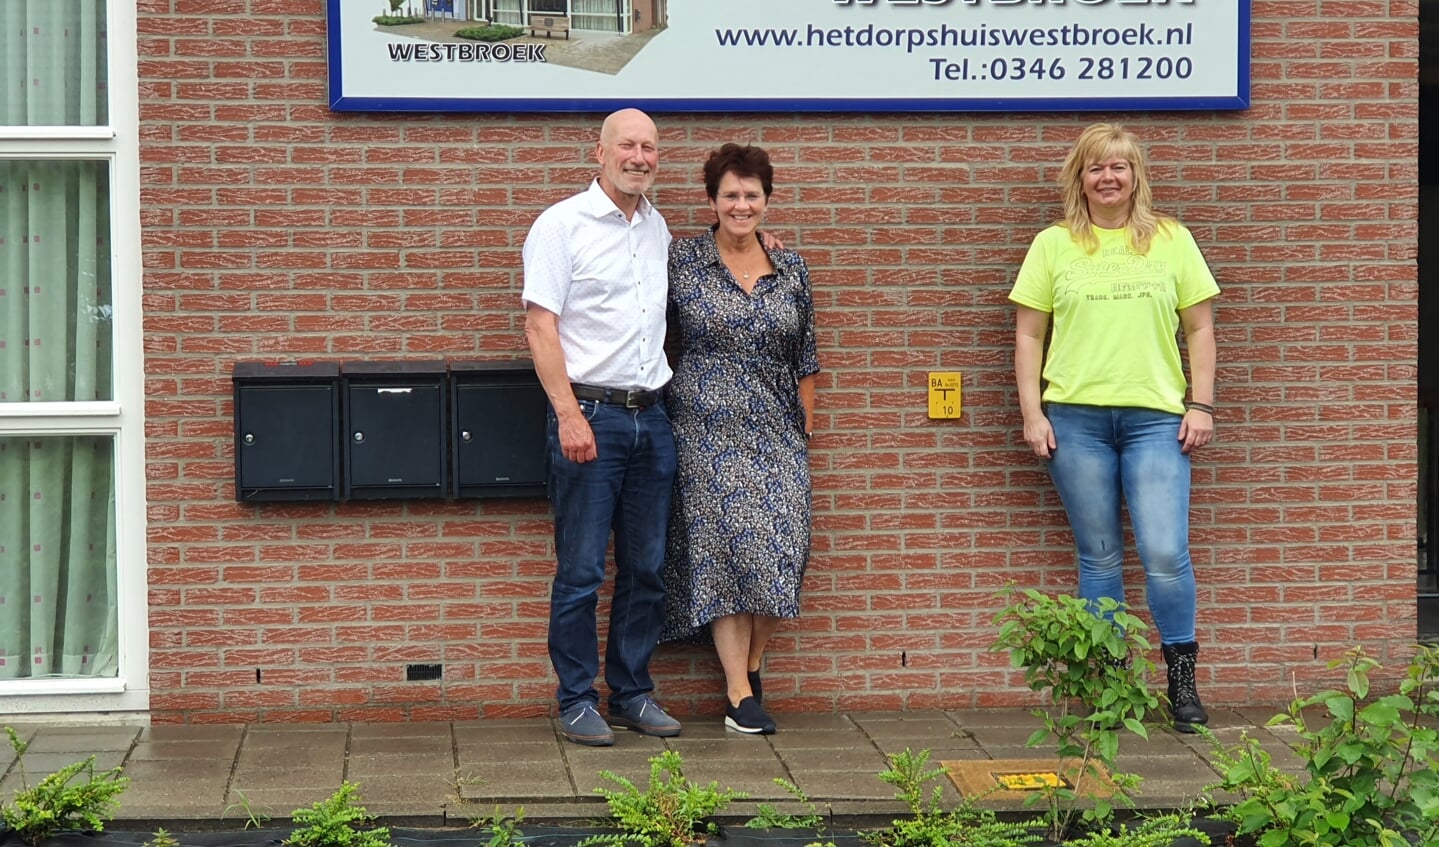 foto 2020 week 25 pag. 7 (Juni 2020.jpg)
Natasja van Barneveld (r) neemt het stokje over van Ad en Hilda Verhoef als beheerder van Het Dorpshuis Westbroek. (juni 2020)
